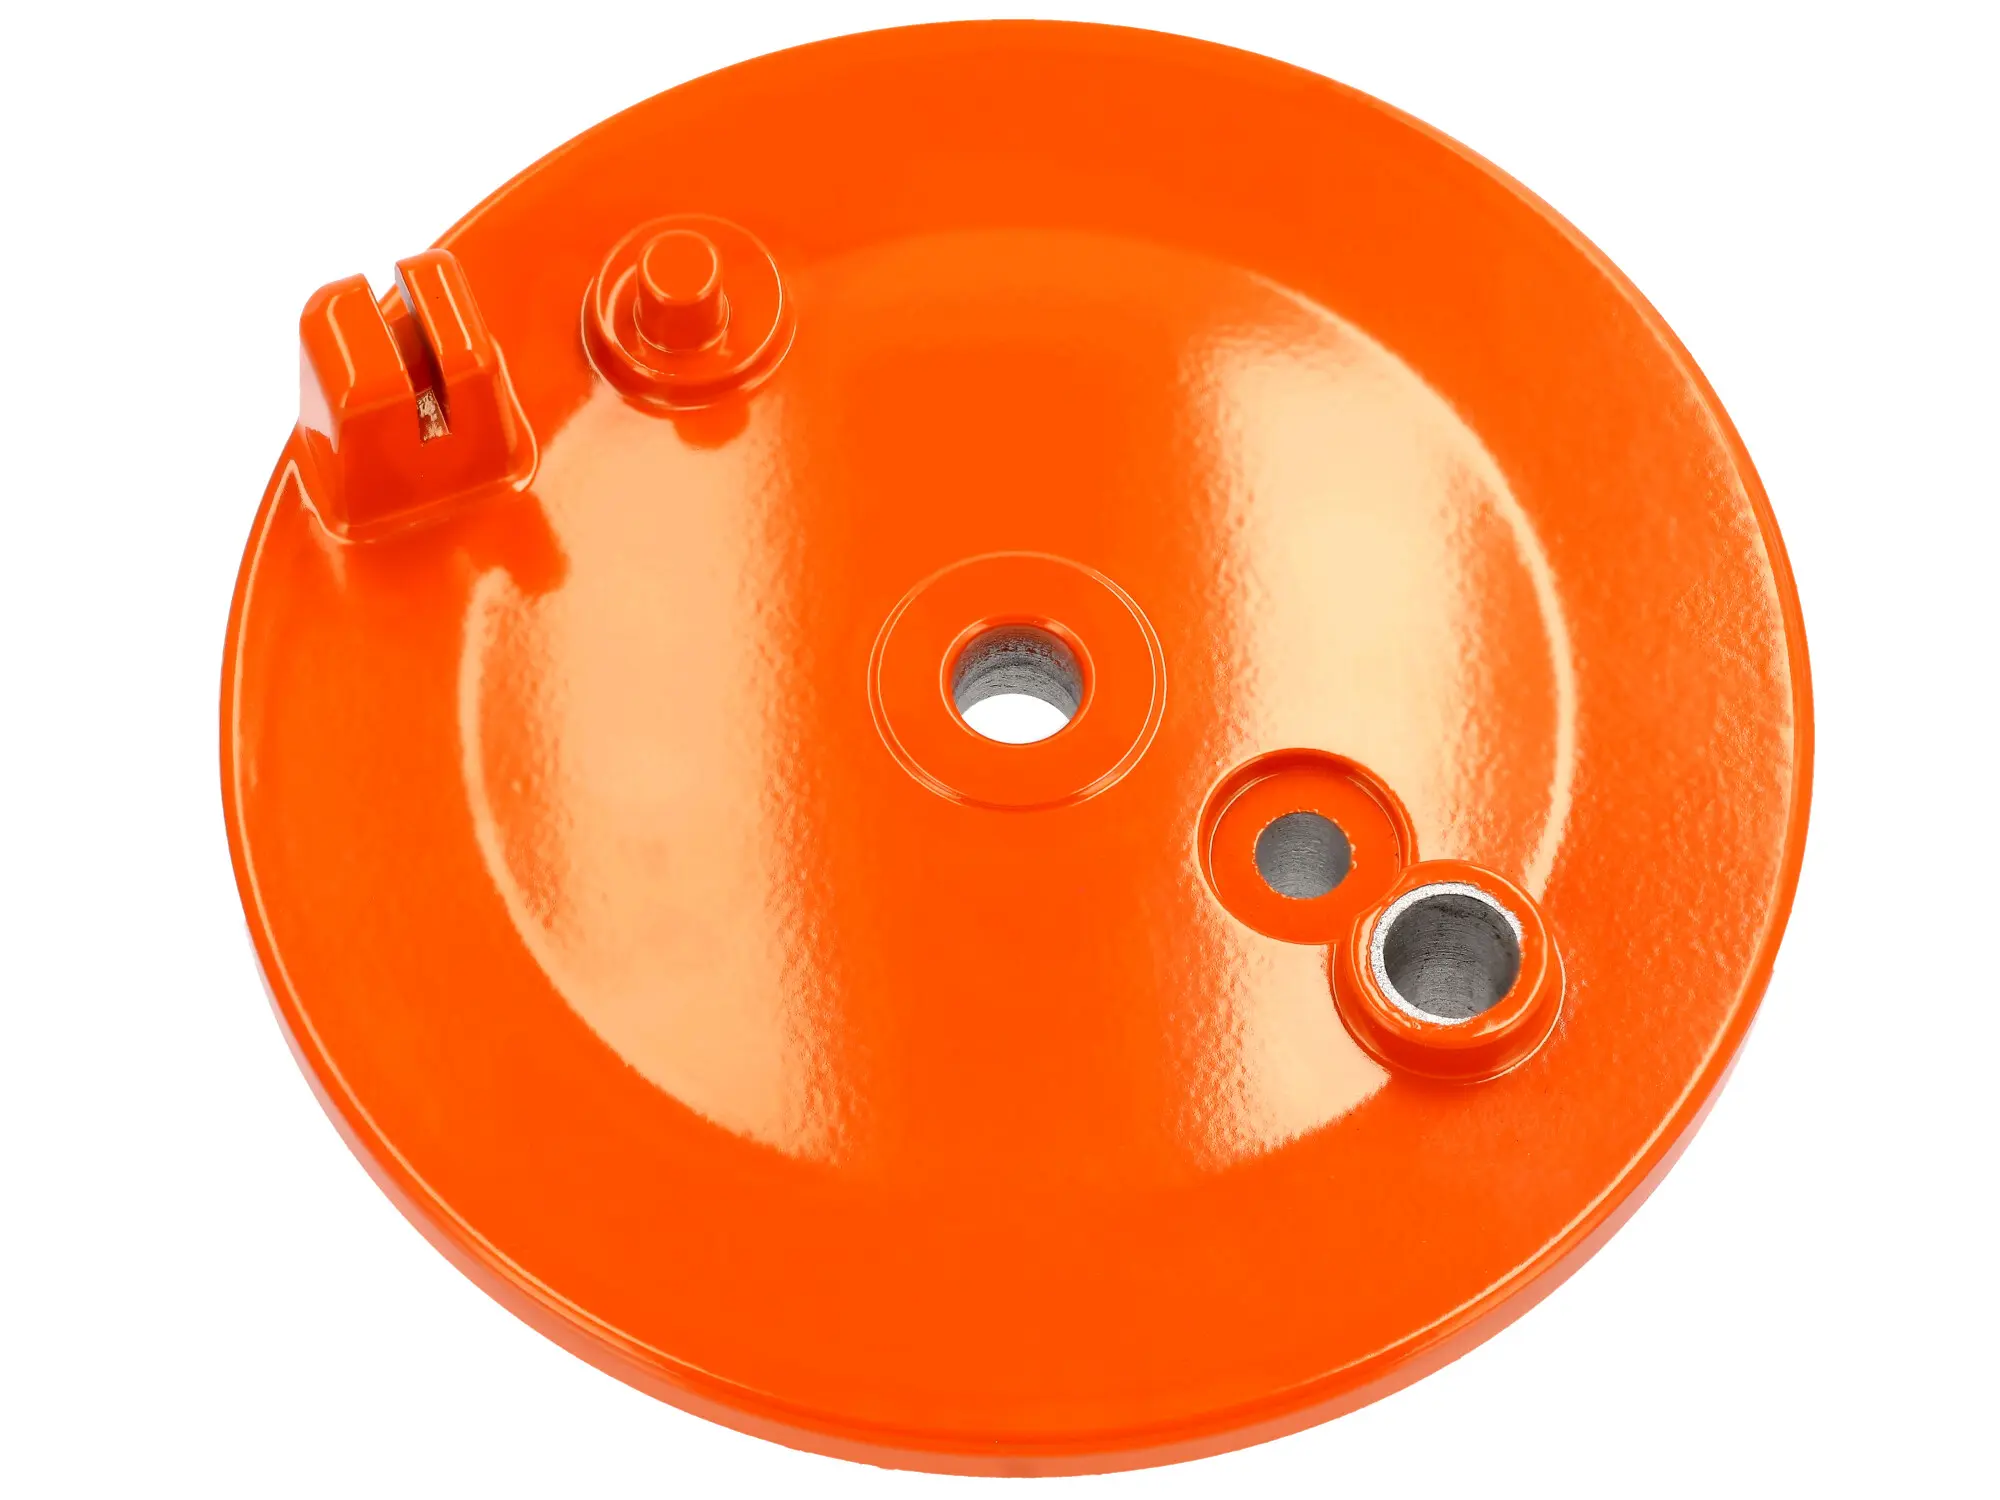 Bremsschild hinten, Orange, mit Bohrung, mit Schlitz - für Simson KR51/1 Schwalbe, SR4-2 Star, SR4-3 Sperber, SR4-4 Habicht, Art.-Nr.: 10073603 - Bild 1